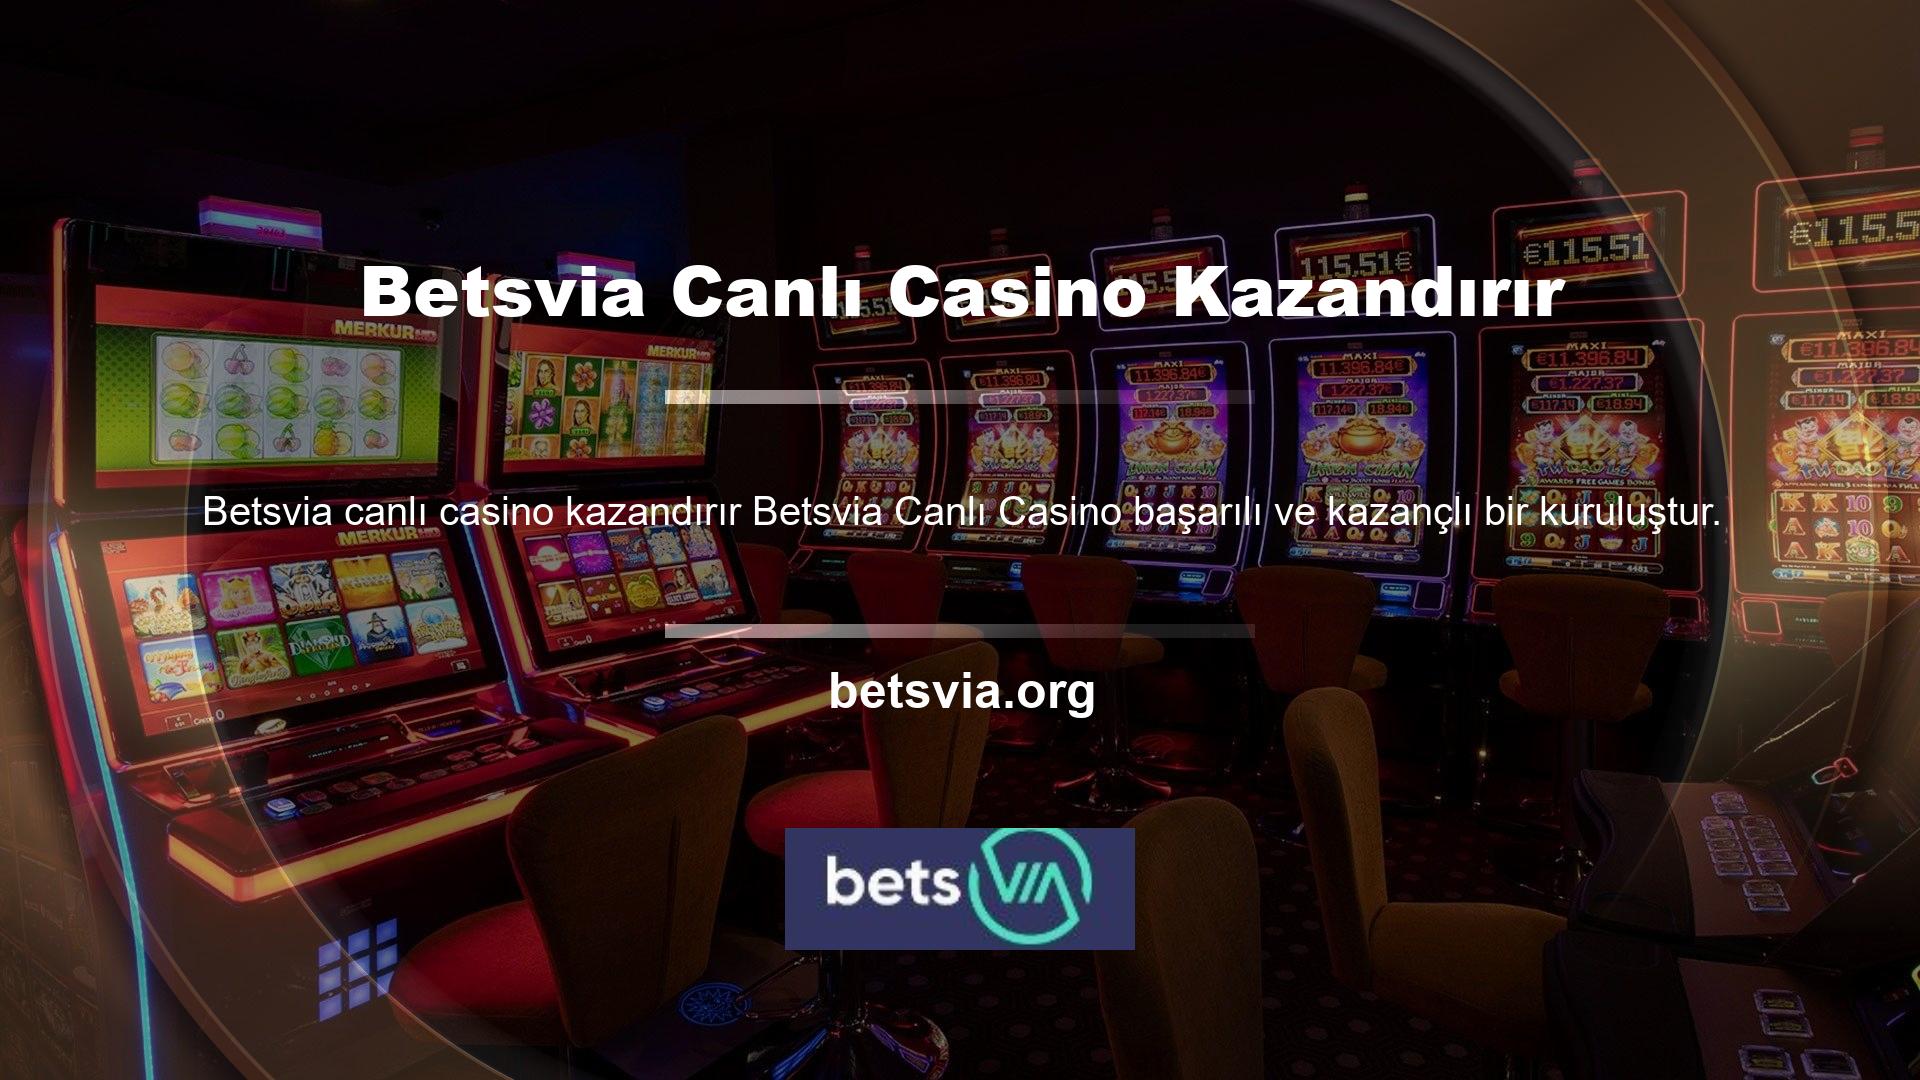 Betsvia Canlı Casino, hem heyecan hem de finansal kazancı aynı anda sunabilmesi nedeniyle casino sitesi kullanıcıları tarafından tercih edilmektedir